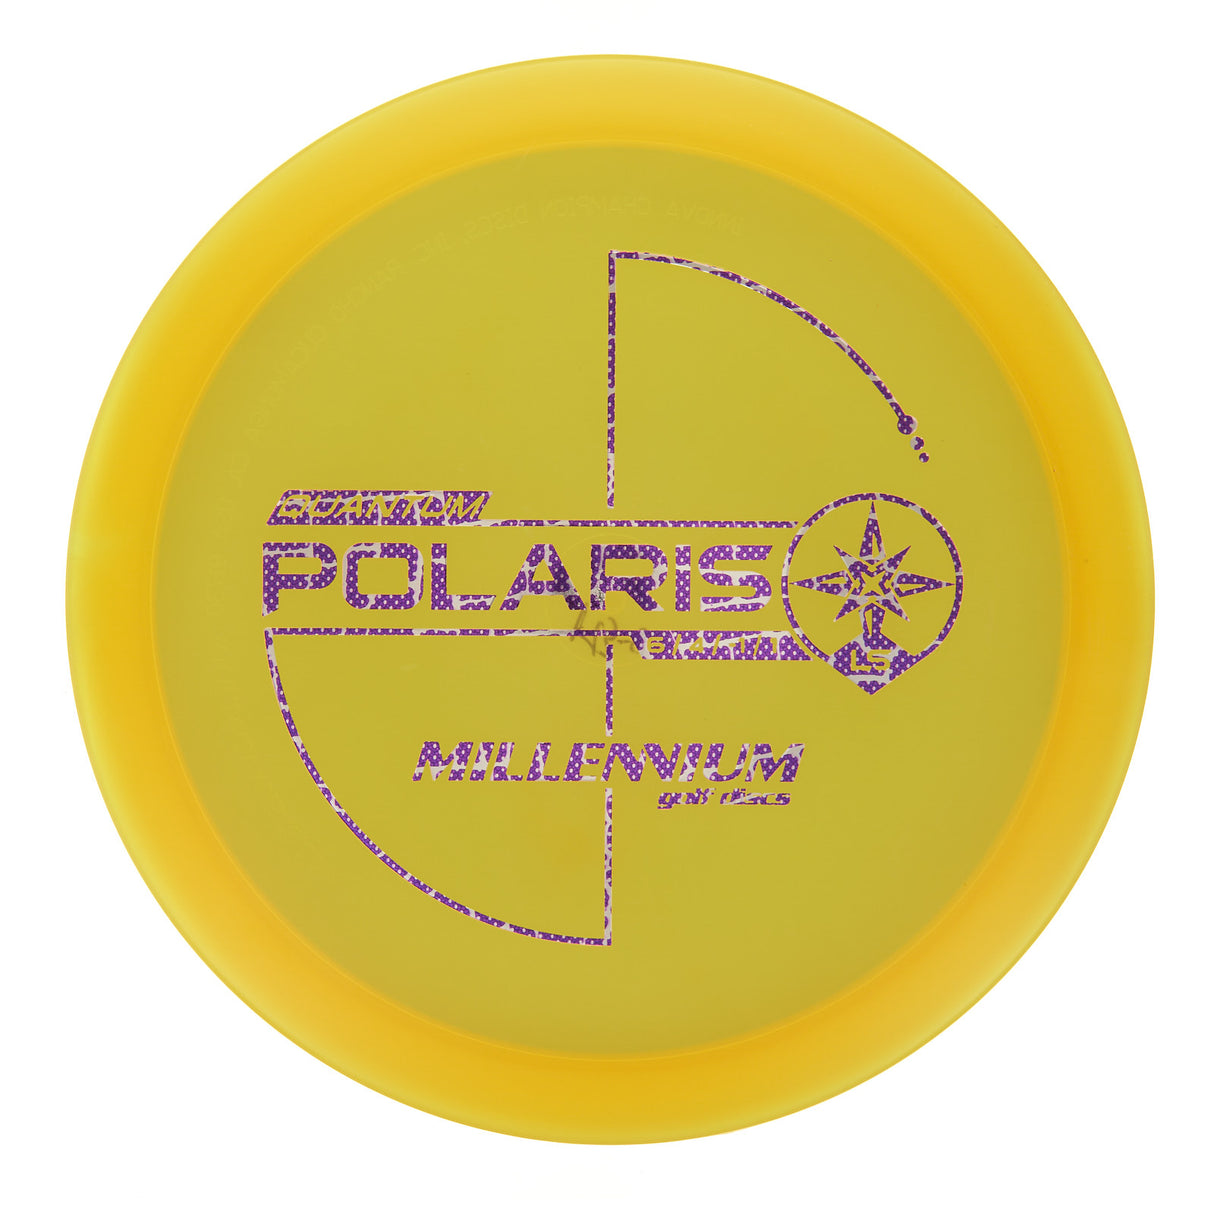 Millennium Polaris LS - Quantum 175g | Style 0002